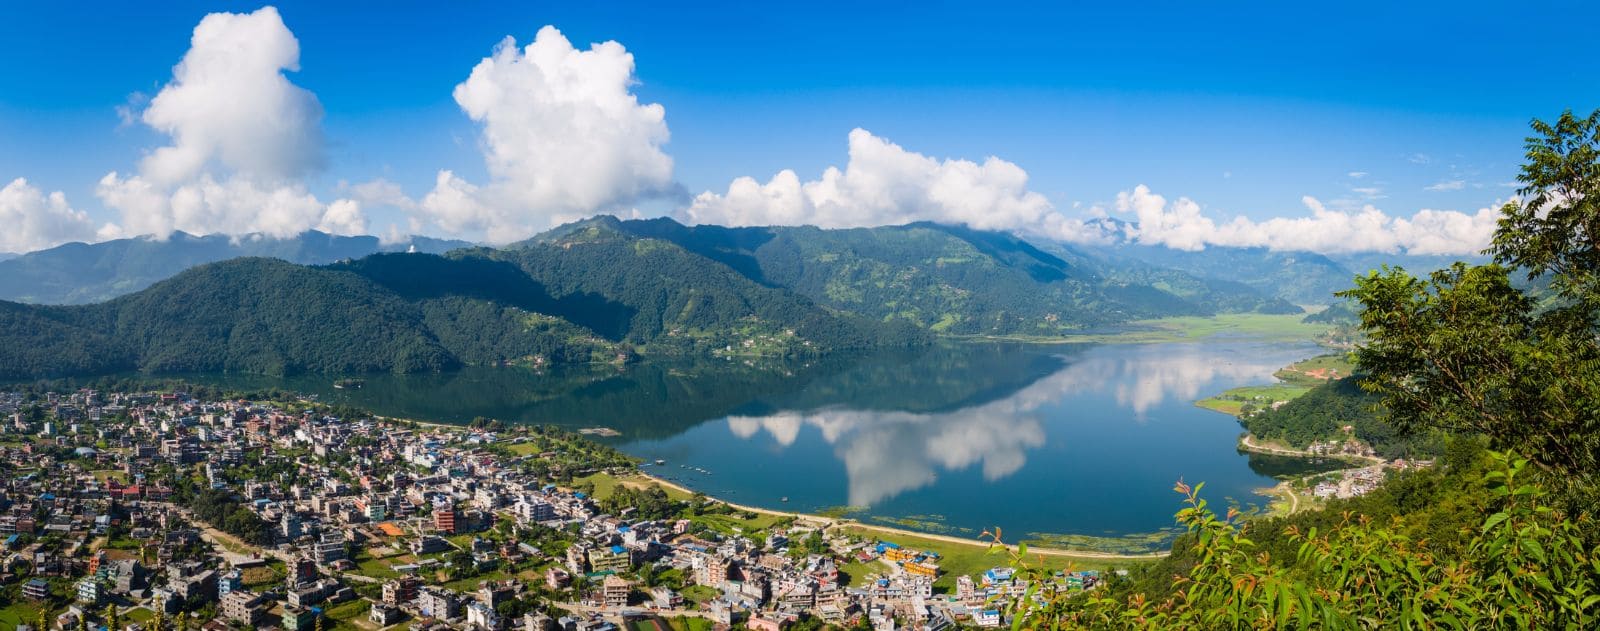 Organizar un viaje a Nepal